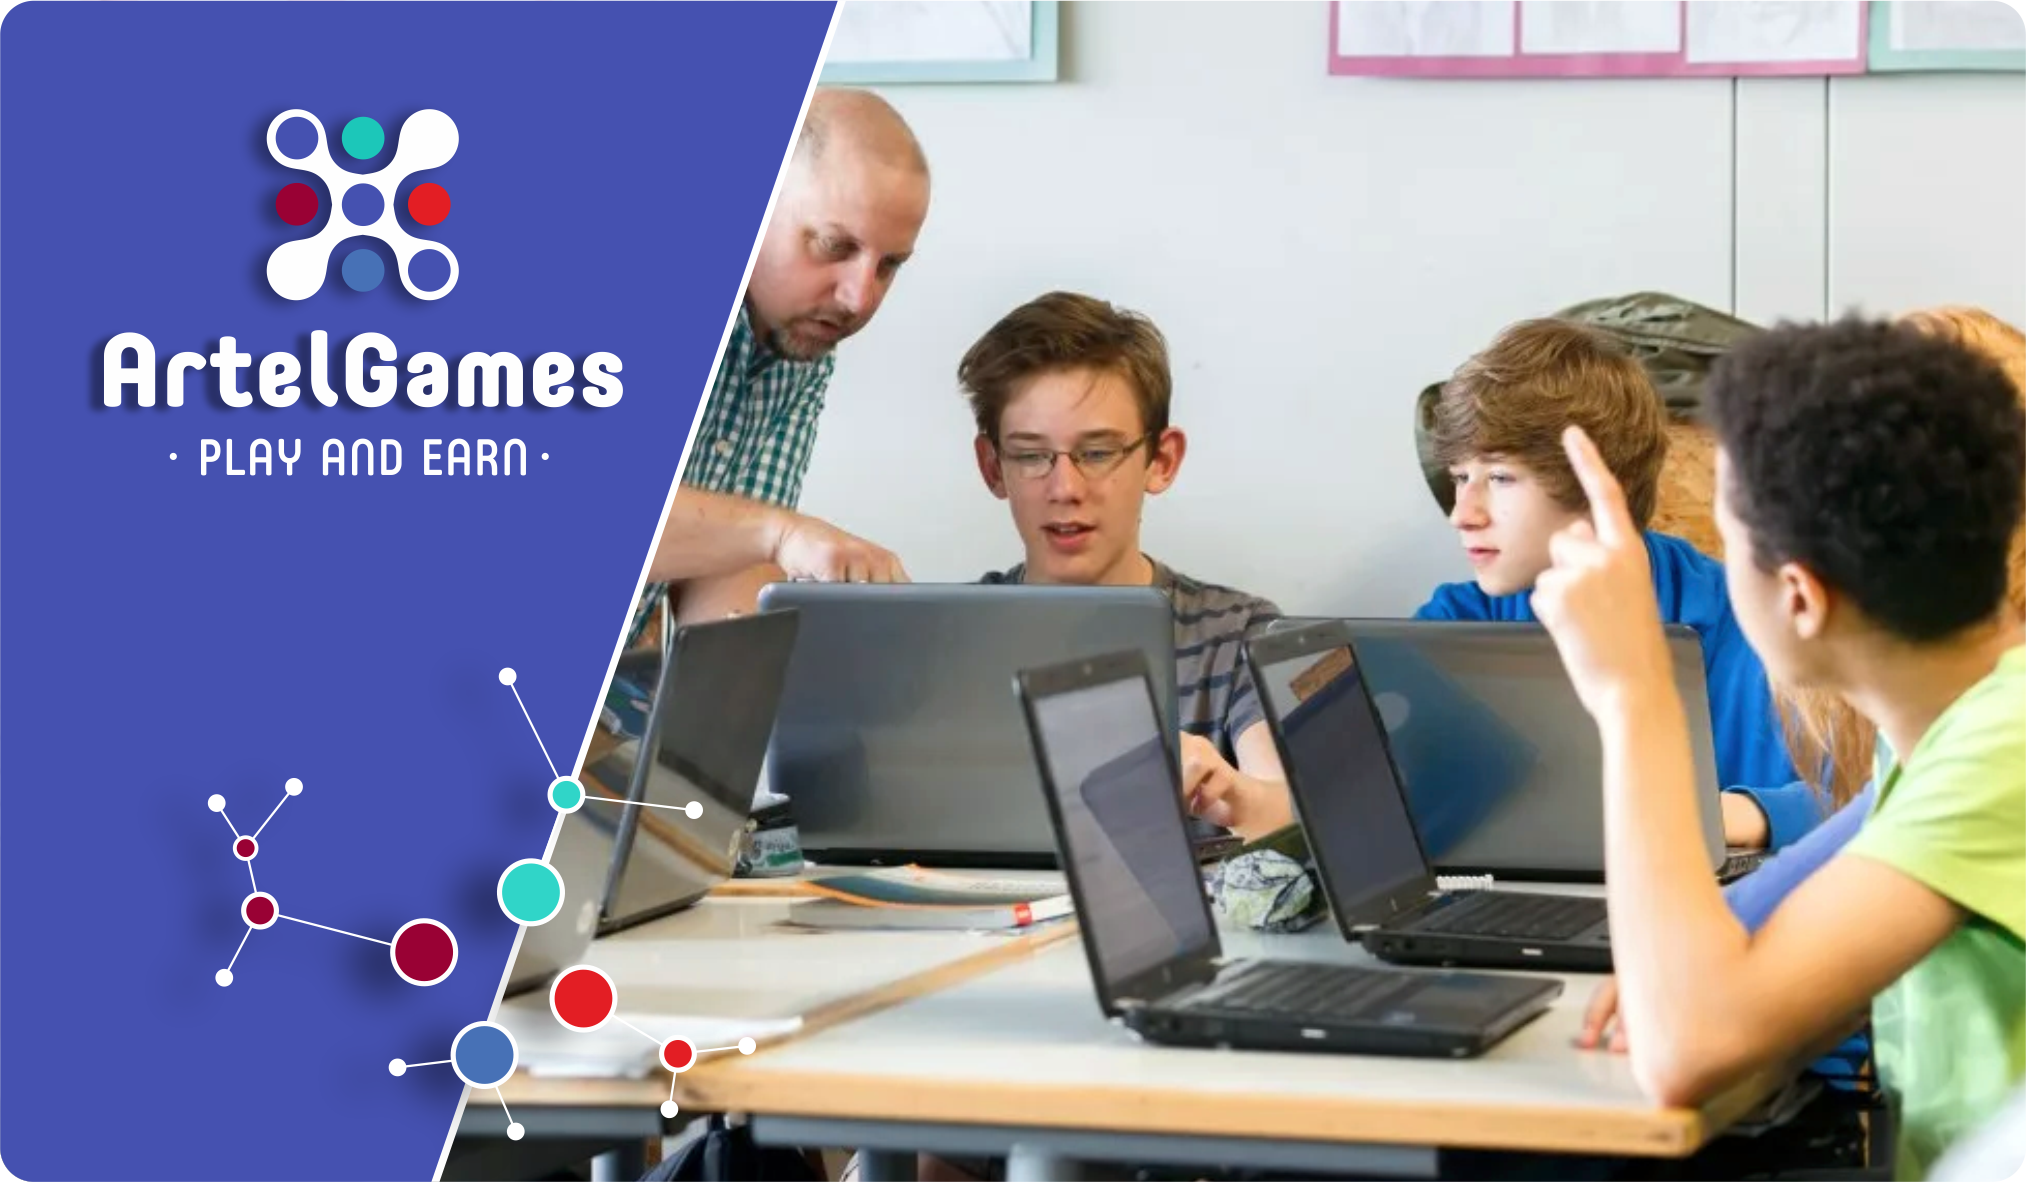 ArtelGames - массовые командные онлайн-игры с реальным заработком для молодёжи 14+